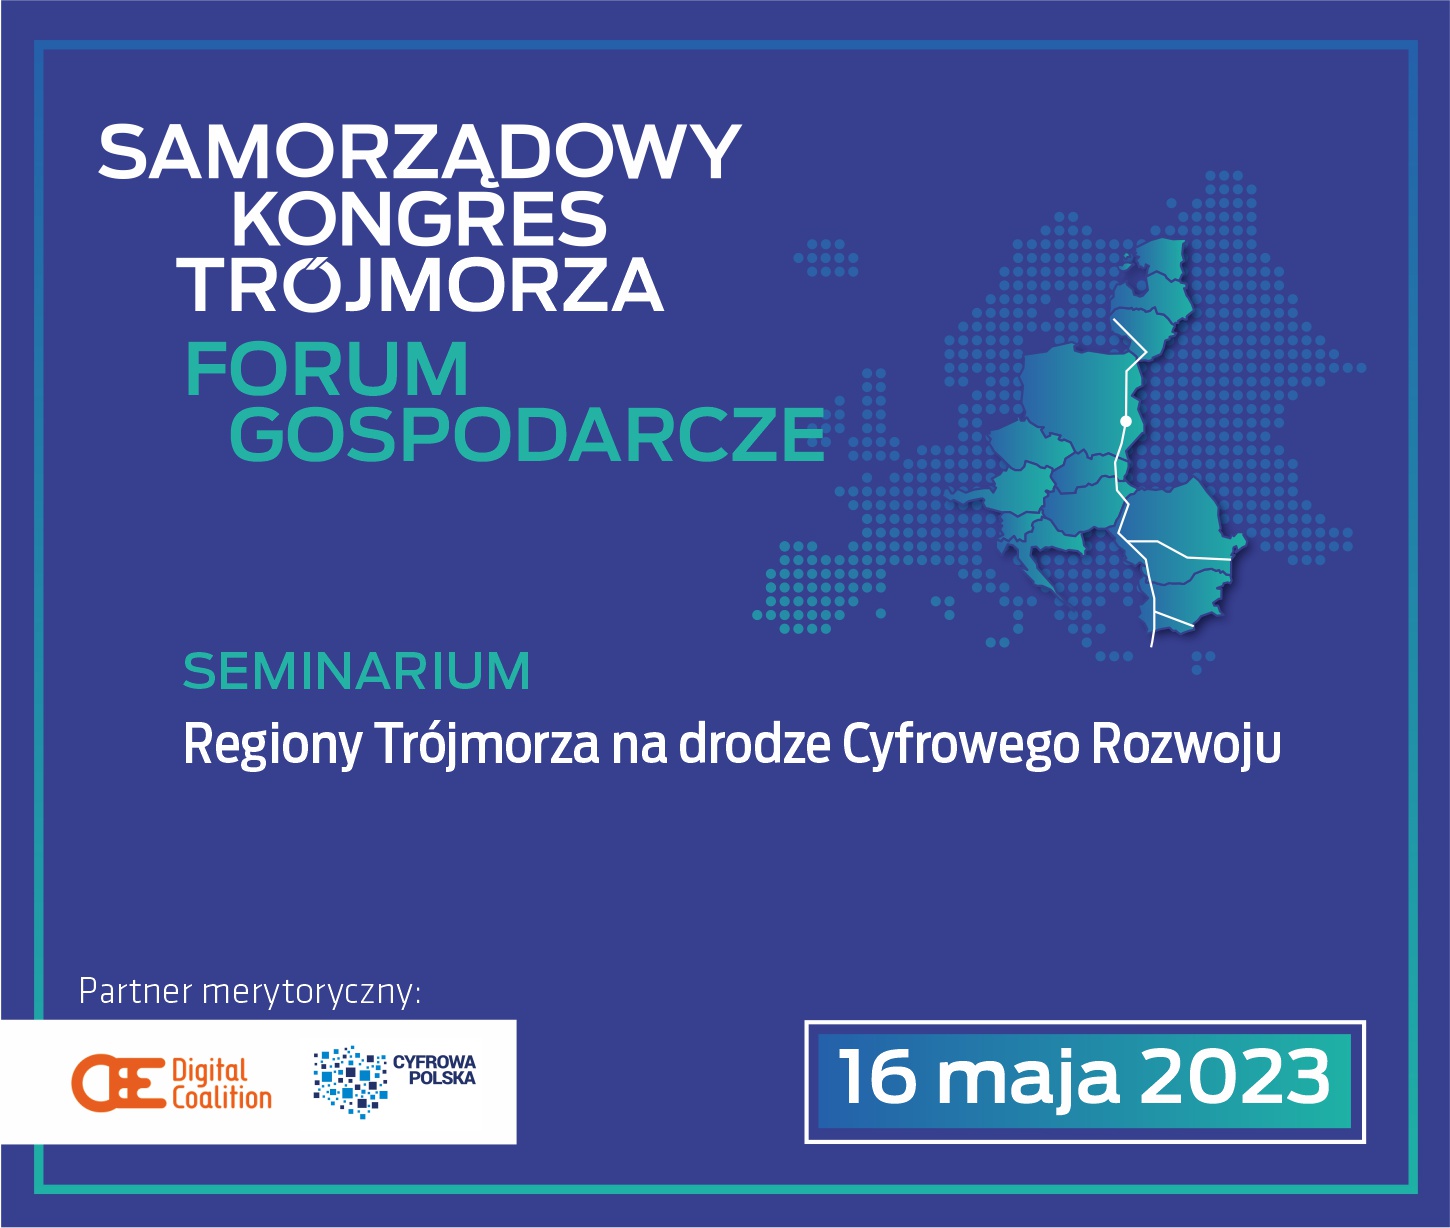 Plansza Forum Gospodarcze. Seminarium: Regiony Trójmorza na drodze cyfrowego rozwoju.